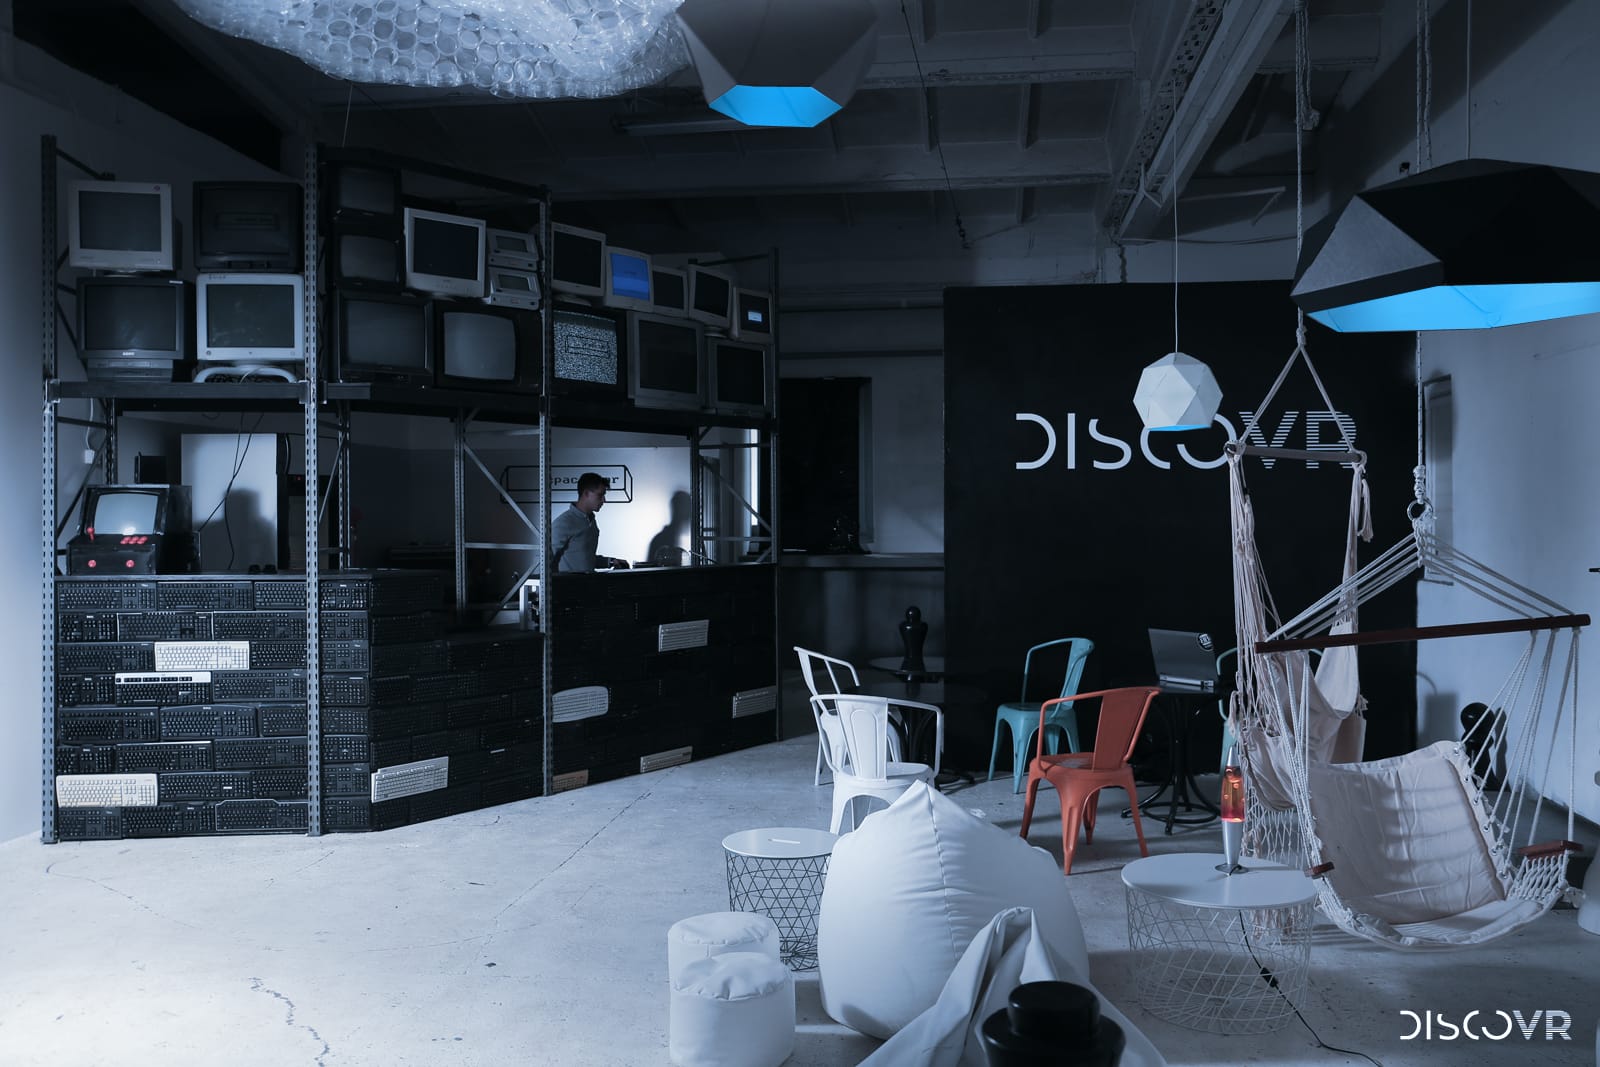 Zdjęcie okładkowe wpisu Wszystko w jednym miejscu. Wizyta w DiscoVR – największym w Europie centrum rozrywki wirtualnej rzeczywistości